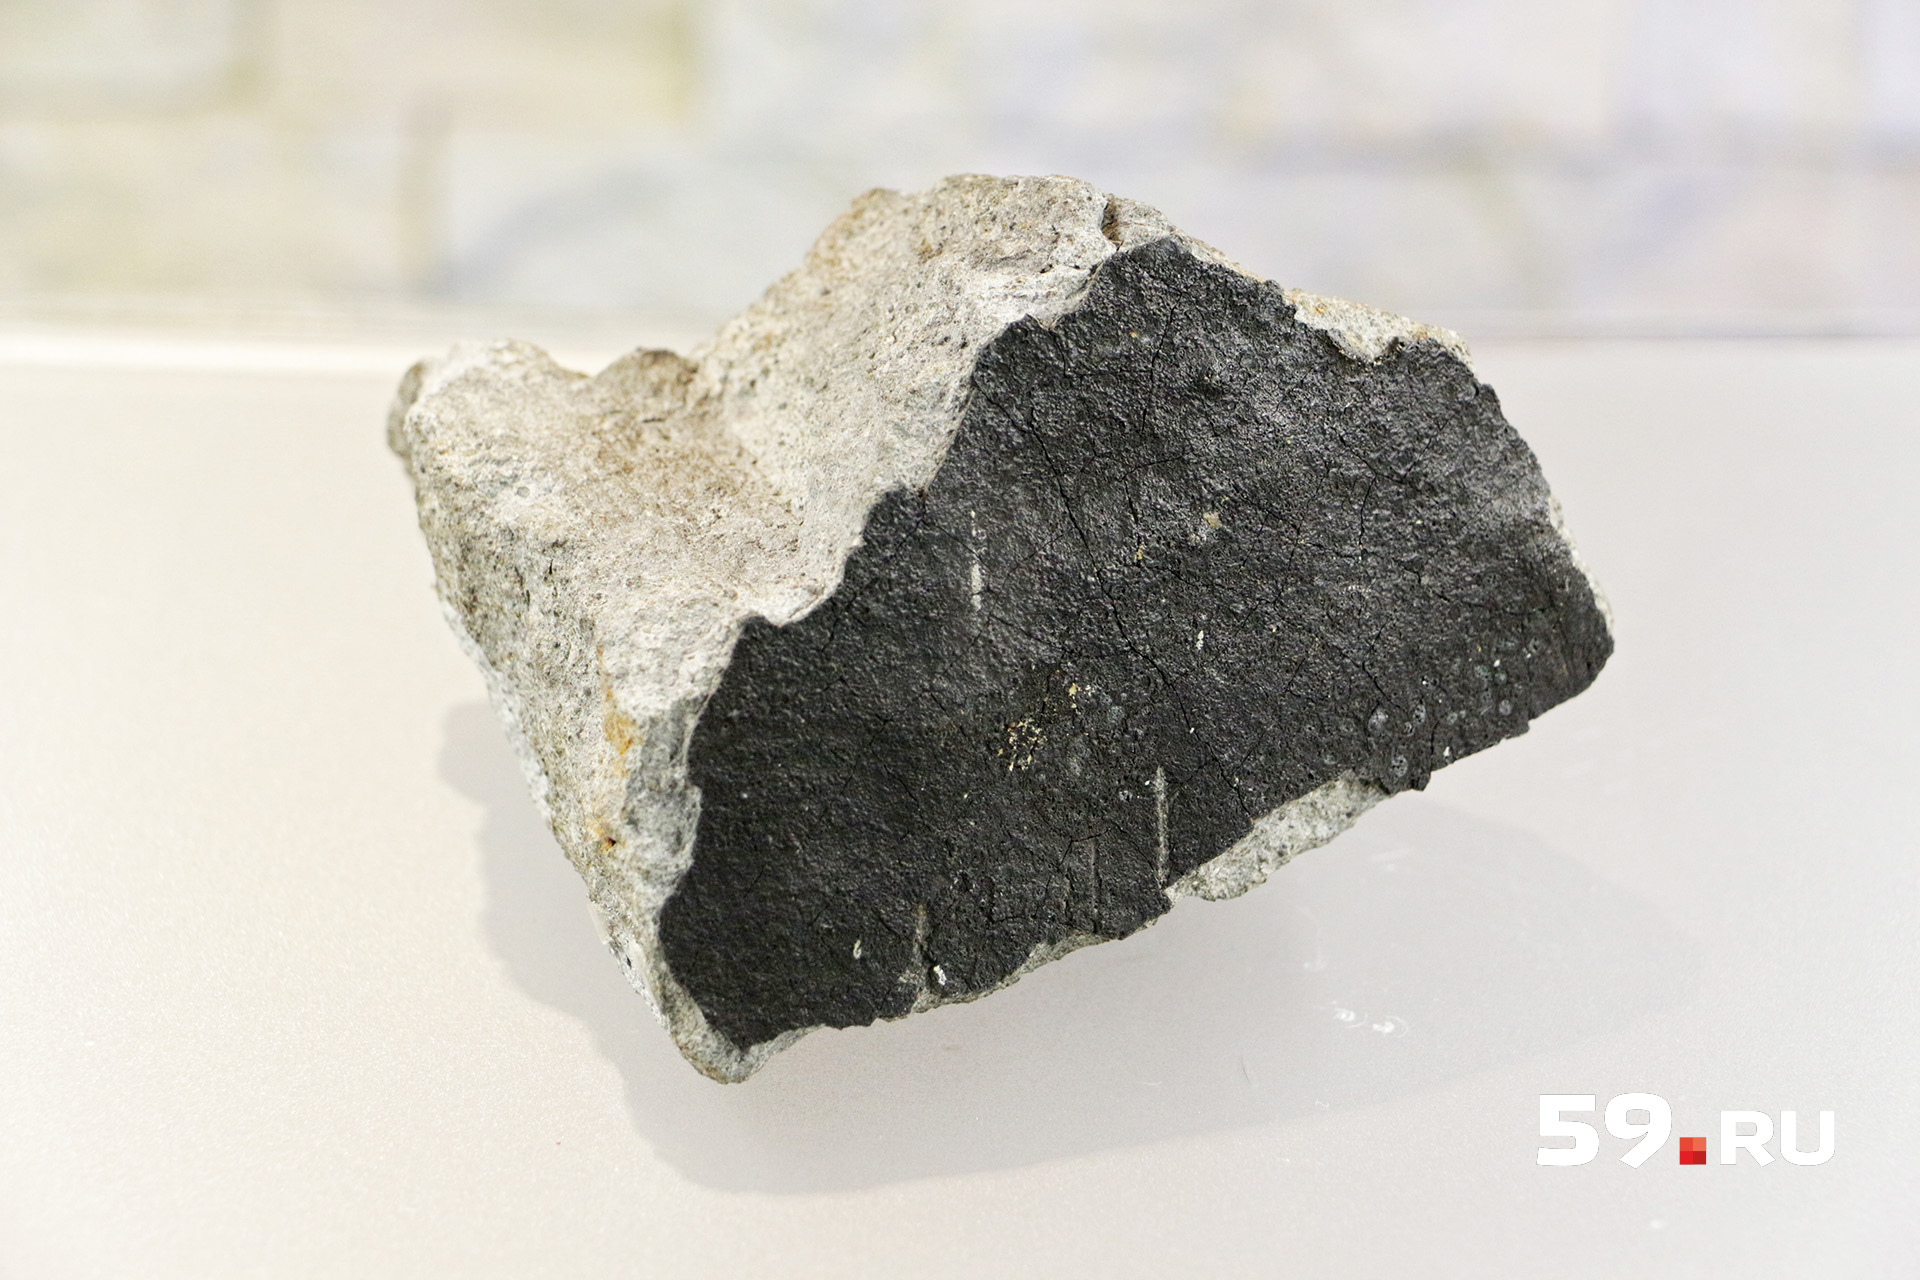 Этот метеорит можно увидеть в Музее пермских древностей